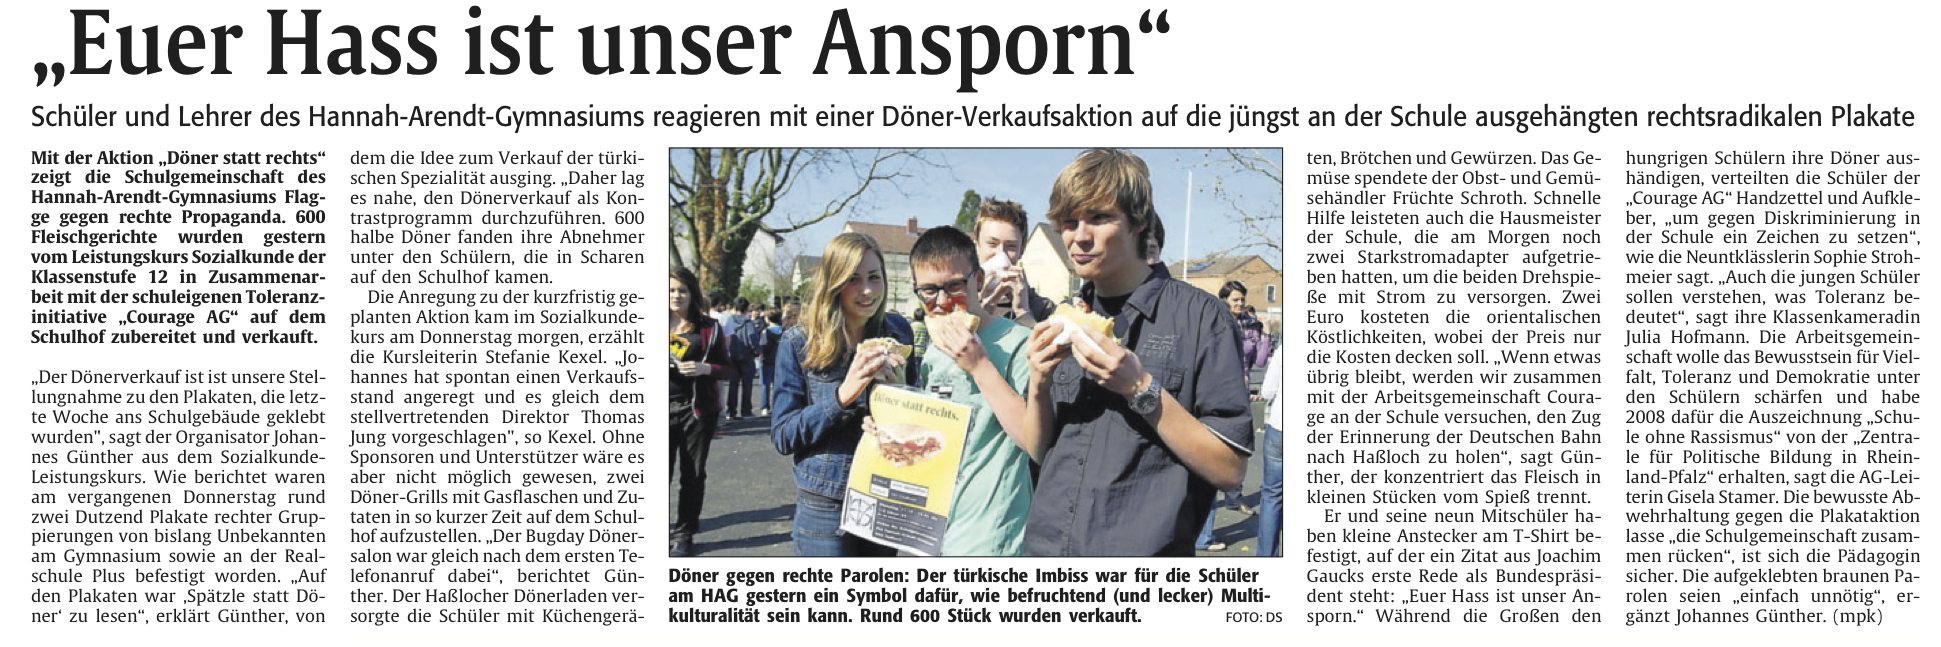 Die Rheinpfalz vom 28.3.2012 - Euer Hass ist unser Ansporn